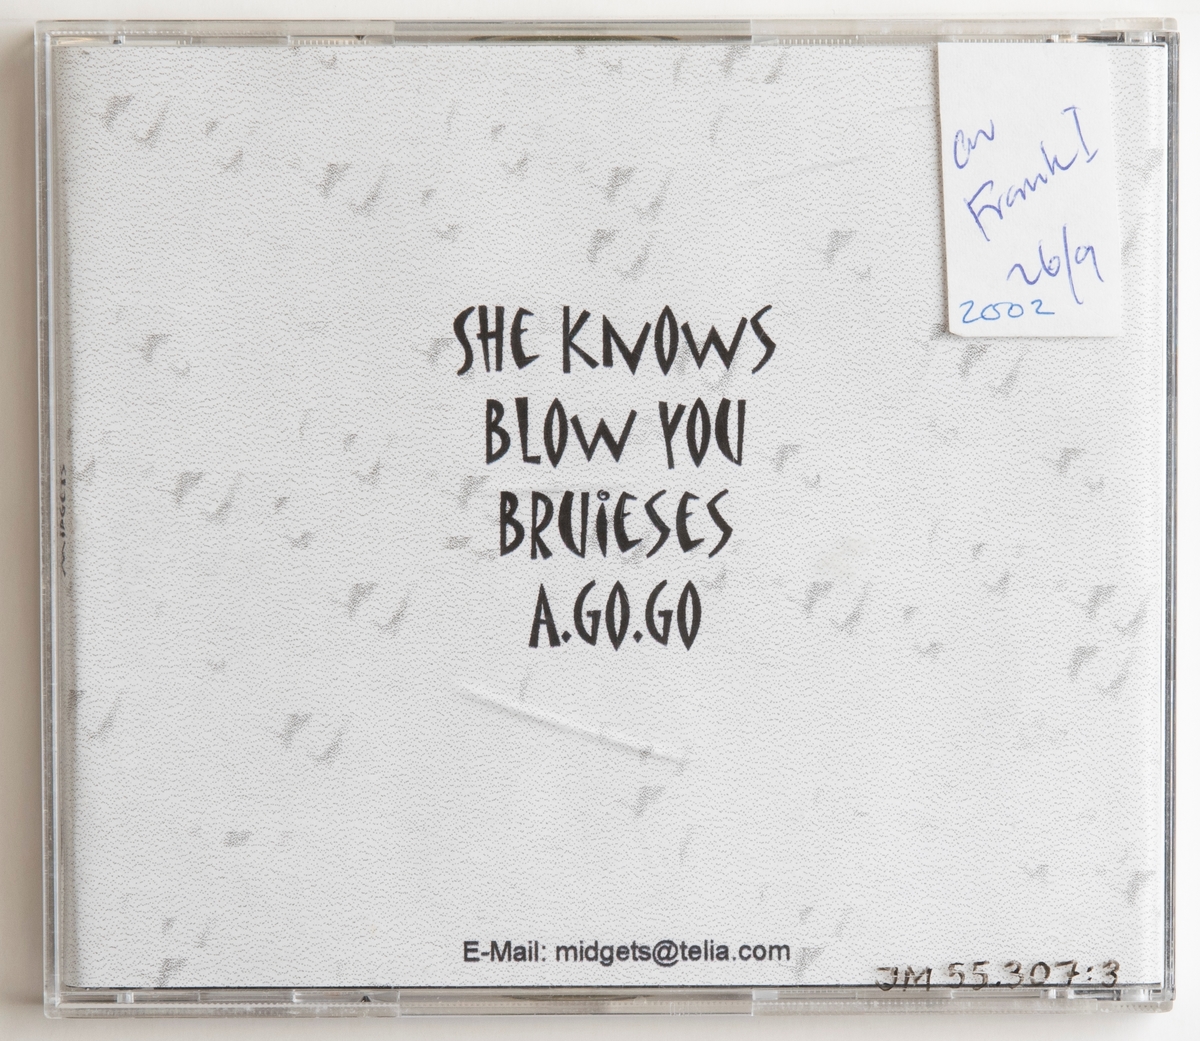 CD-skiva, musik med gruppen Midgets. Skiva i tredelat, hårt plastfodral med inlaga in framsidan och i baksidan. Framsidan har en svart-vit illustration föreställande en kvinna och man i badkläder. På fodralets baksida sitter en klisteretikett med handskriven text: "av Frank I 26/9 2002".

Innehåll:
1. She knows
2. Blow you
3. Bruieses
4. A.go.go

JM 55307:1, Skiva
JM 55307:2, Inlaga
JM 55307:3, Fodral